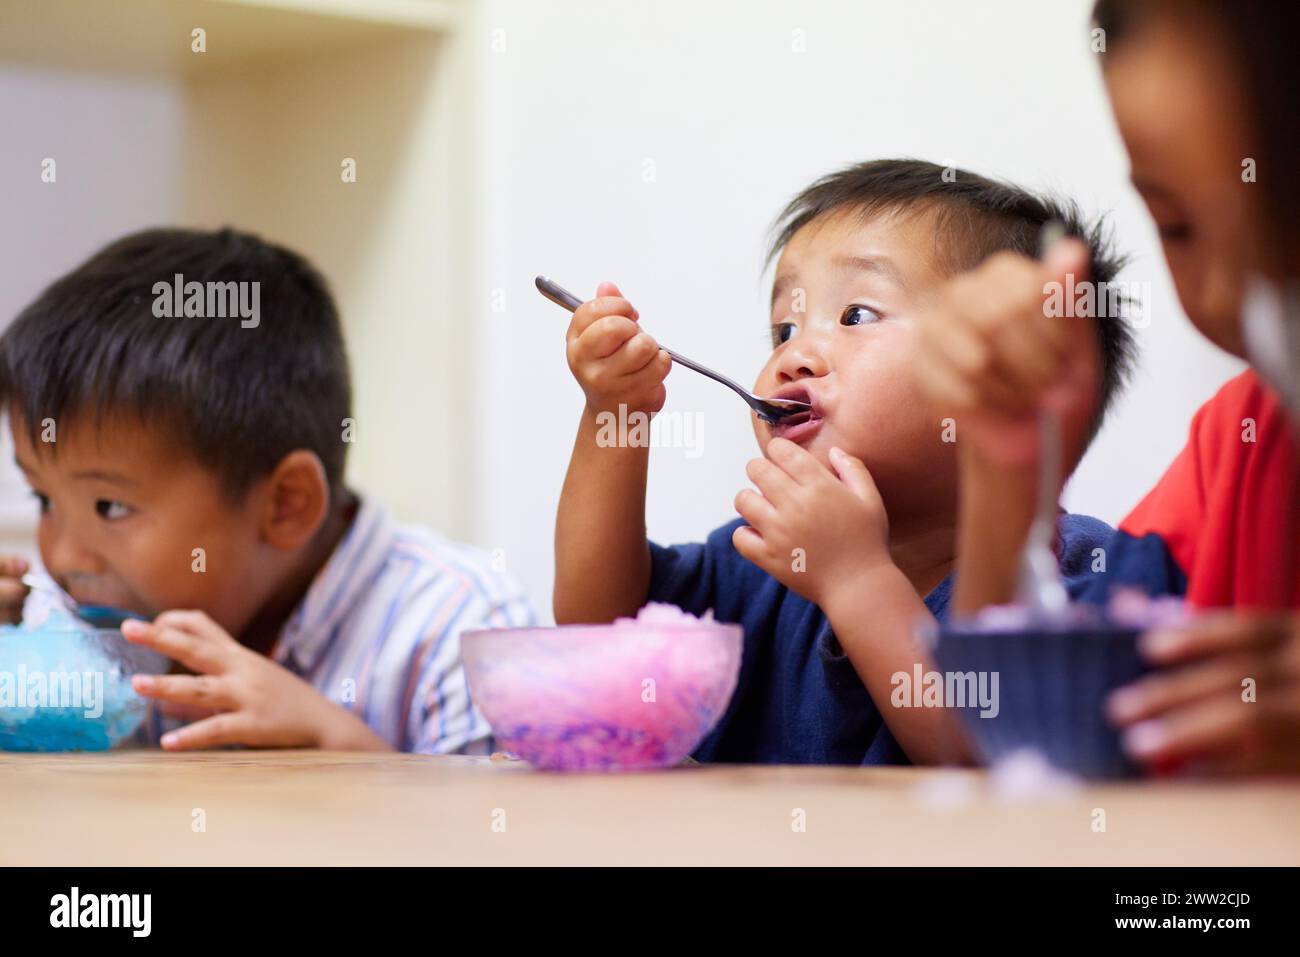 Les enfants mangent de la glace rasée Banque D'Images